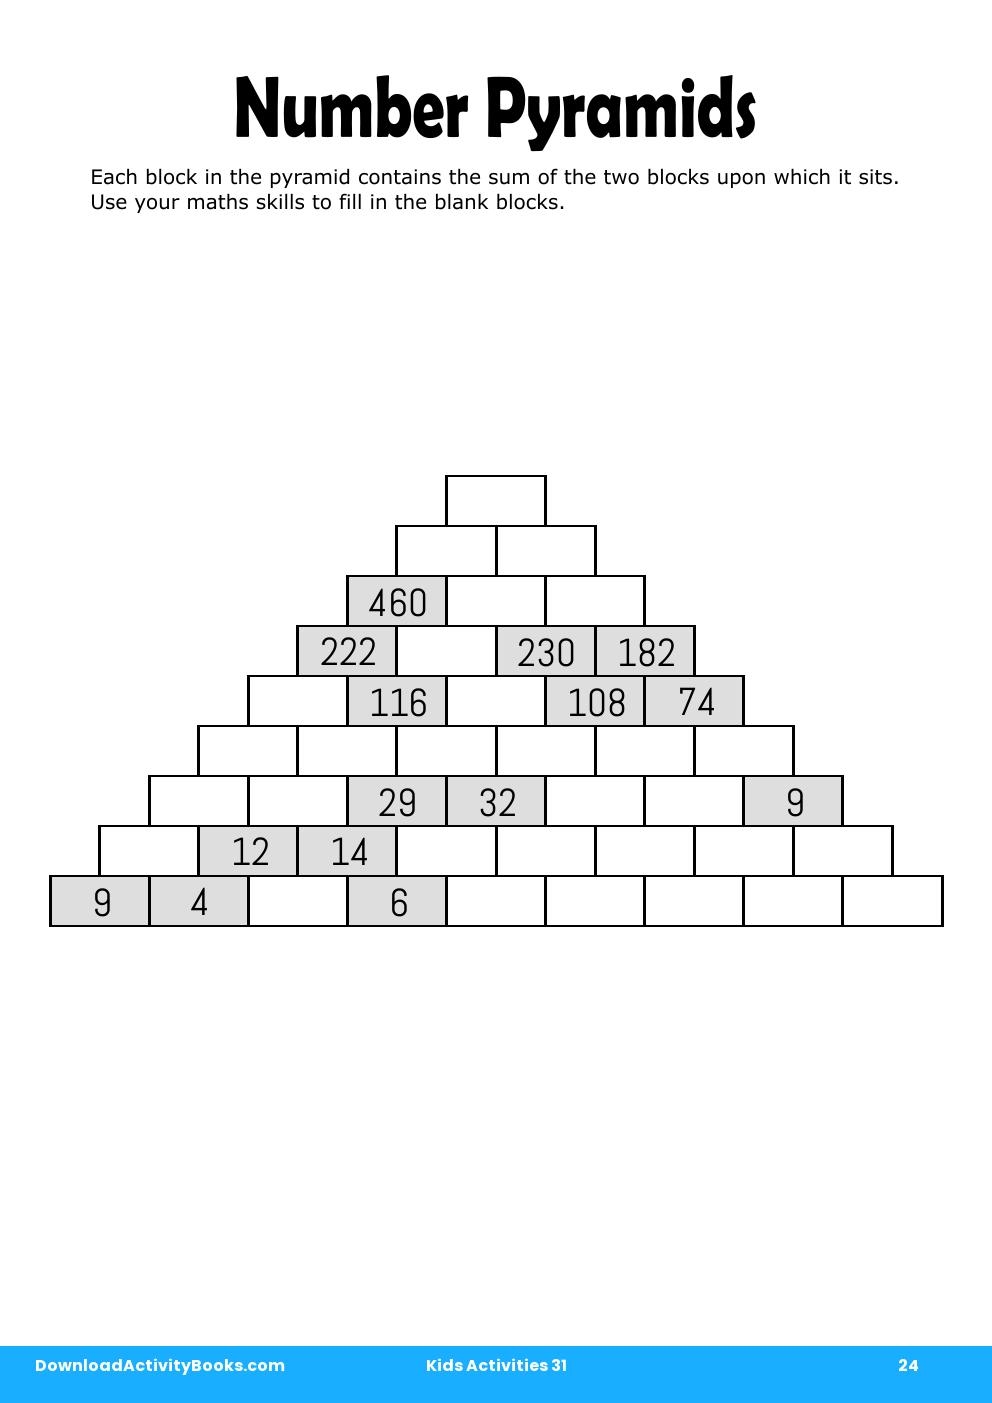 Number Pyramids in Kids Activities 31